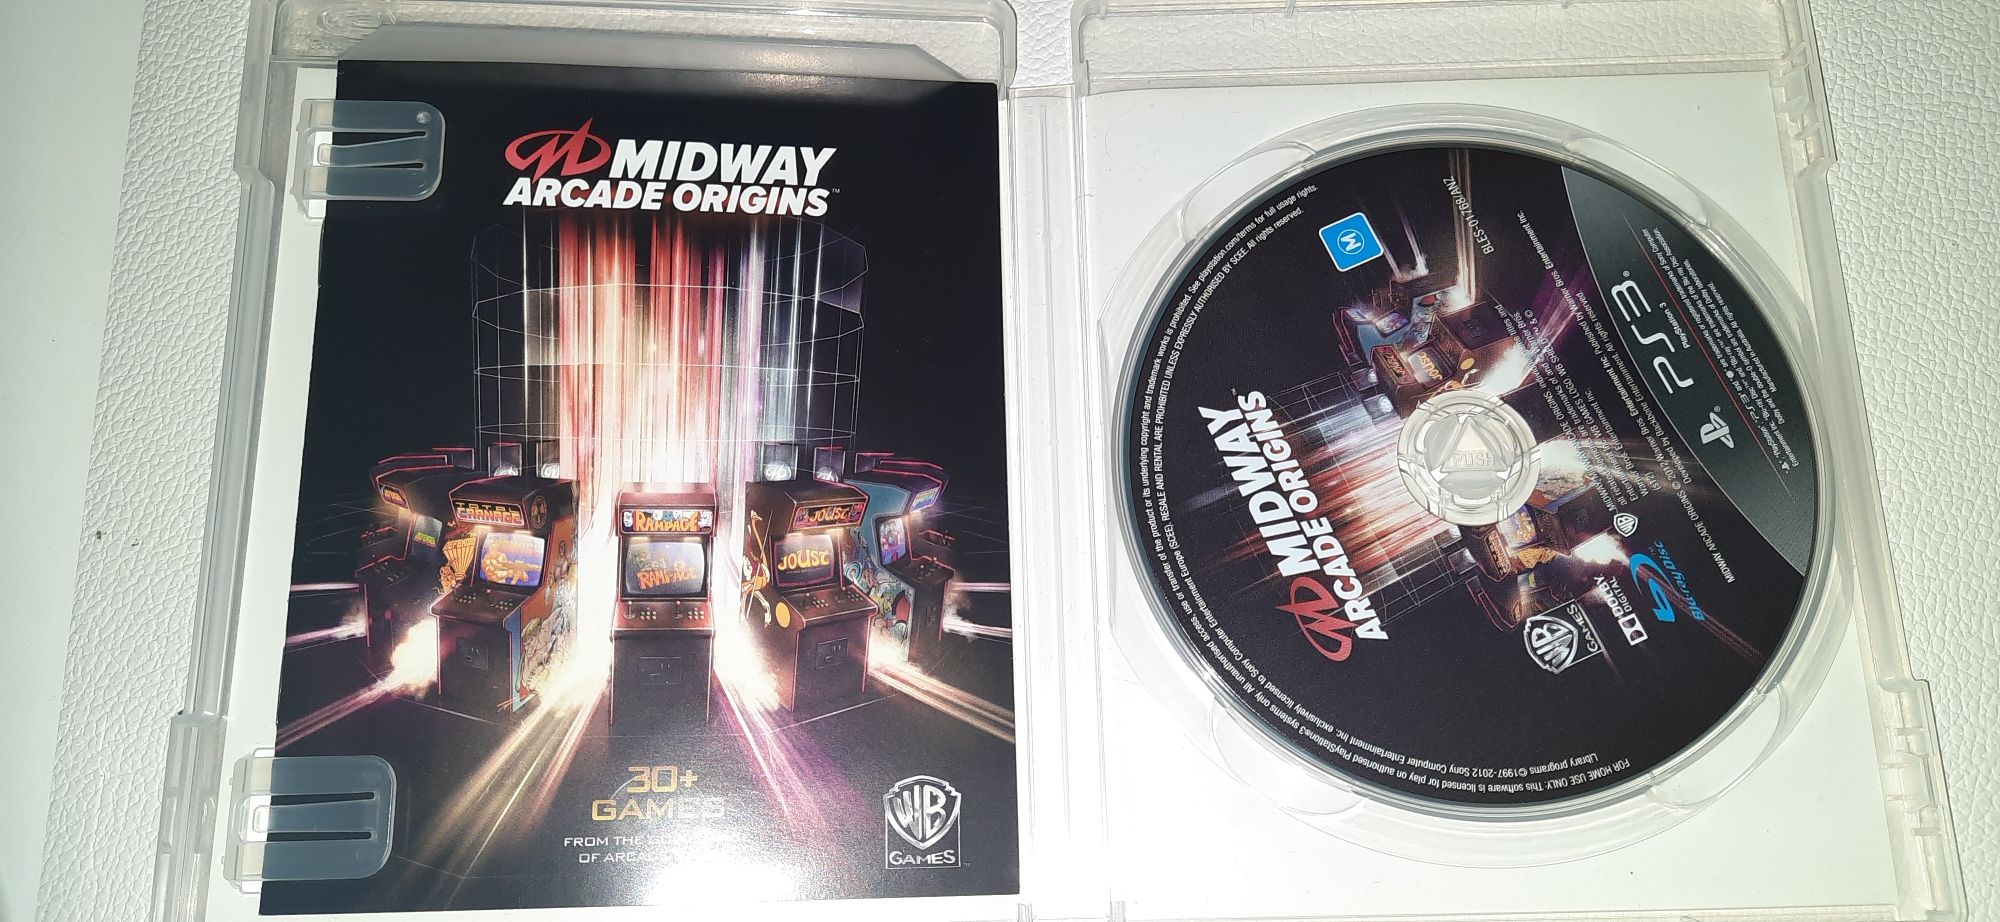 Gra Midway Arcade Origins na ps3, unikat kolekcjonerski.